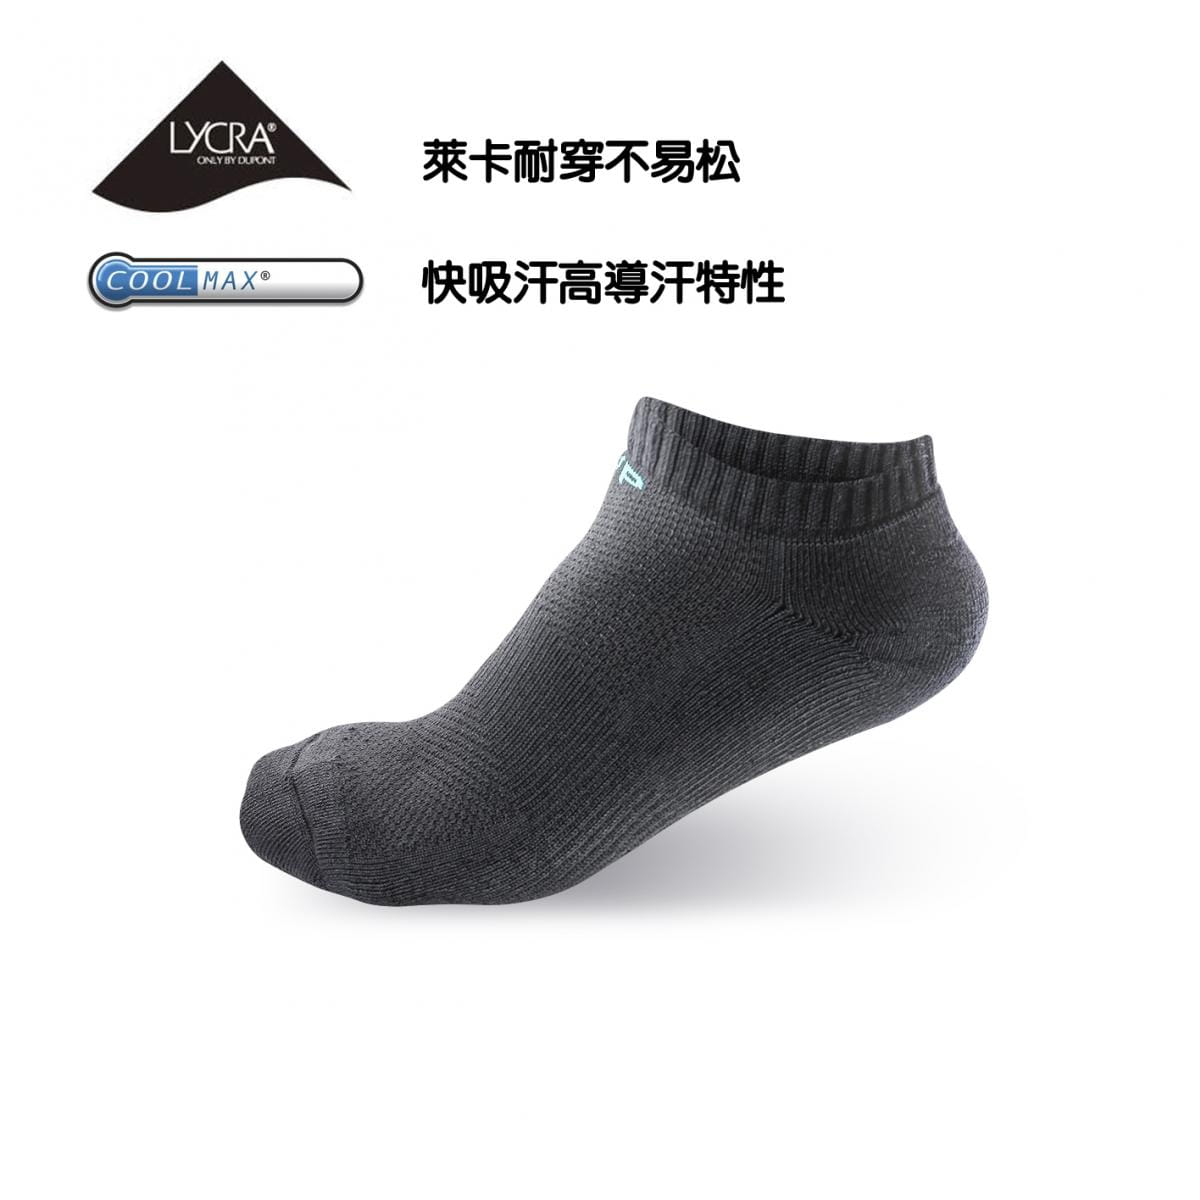 竹炭系列-毛巾薄底船型襪 0